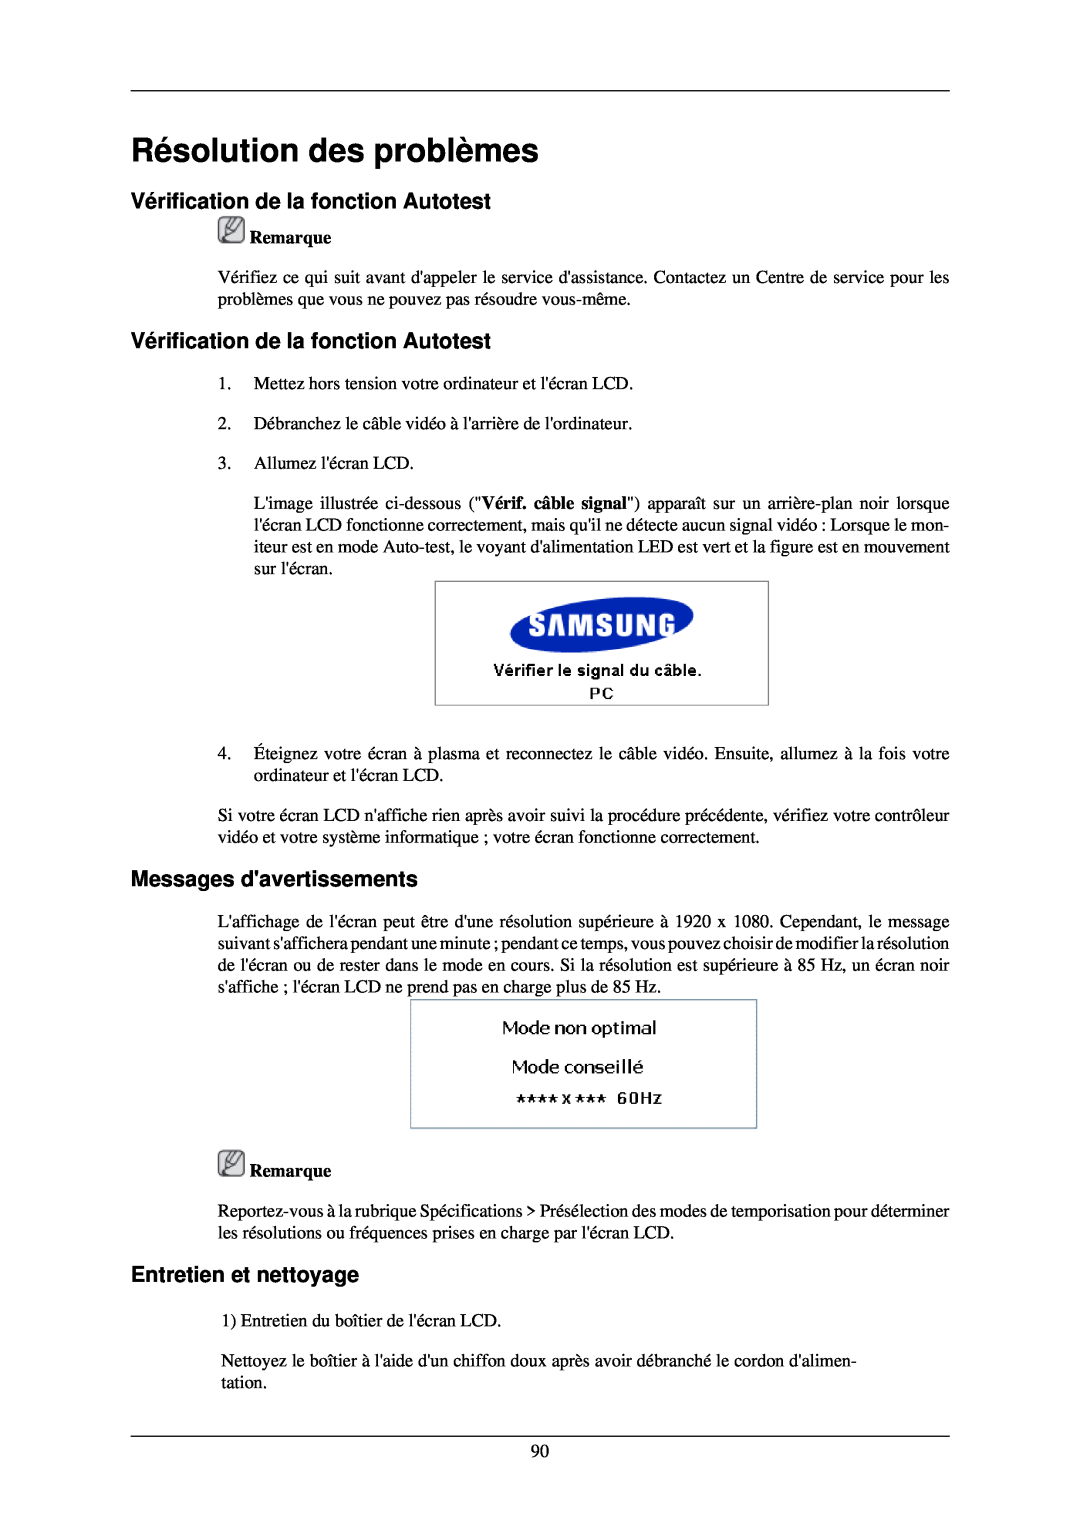 Samsung 400TSN-2 Résolution des problèmes, Vérification de la fonction Autotest, Messages davertissements, Remarque 